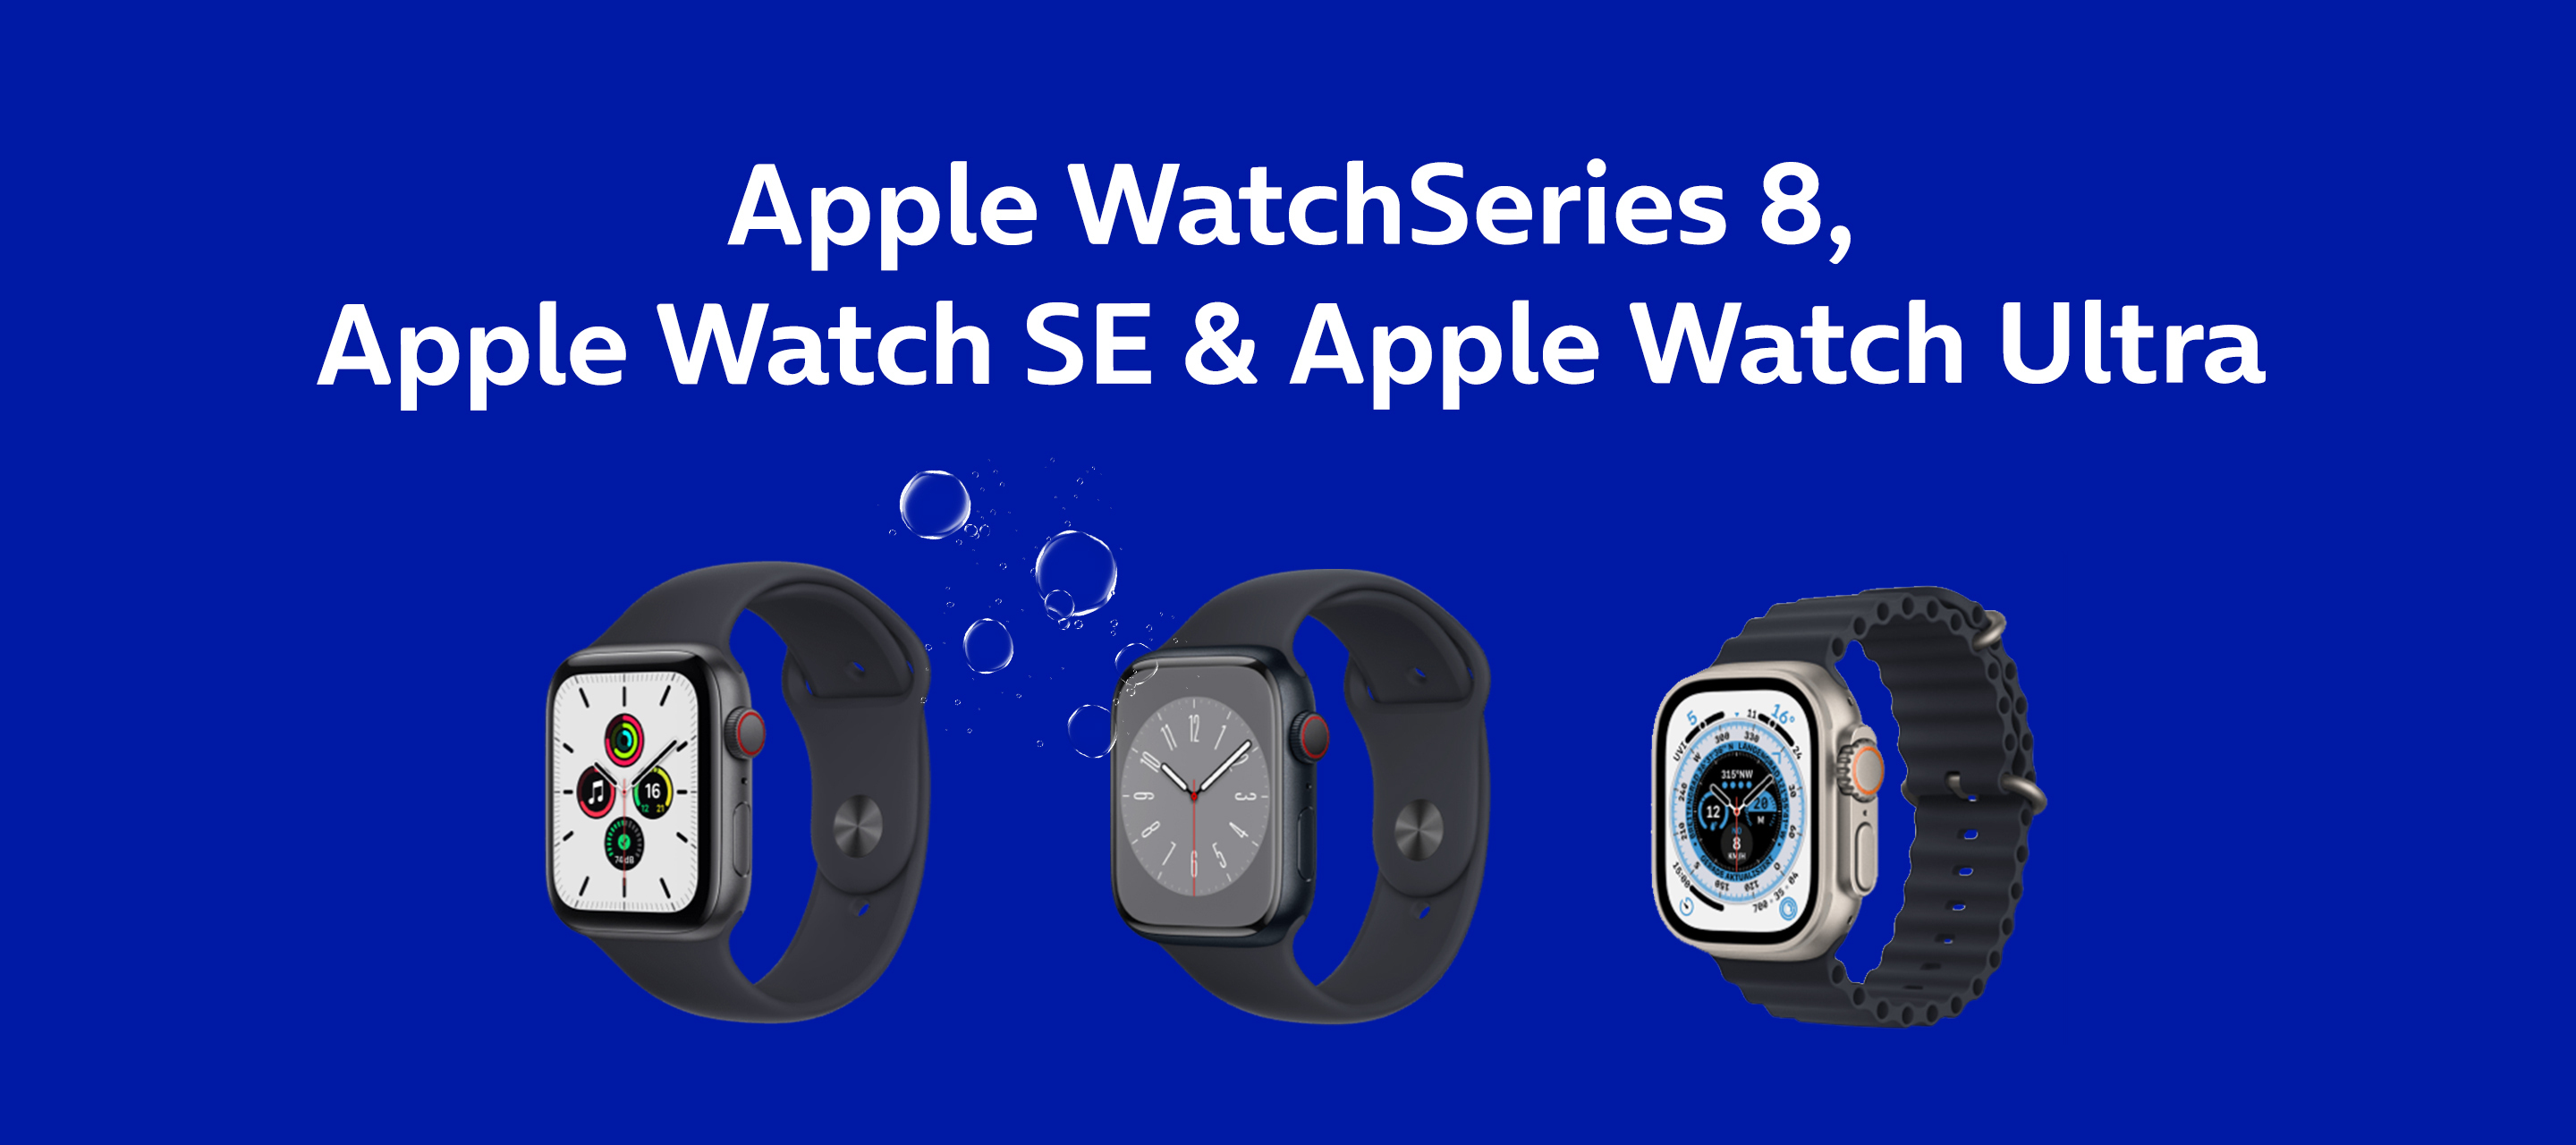 Jetzt bei O₂ - Die neuen Apple Watch Modelle